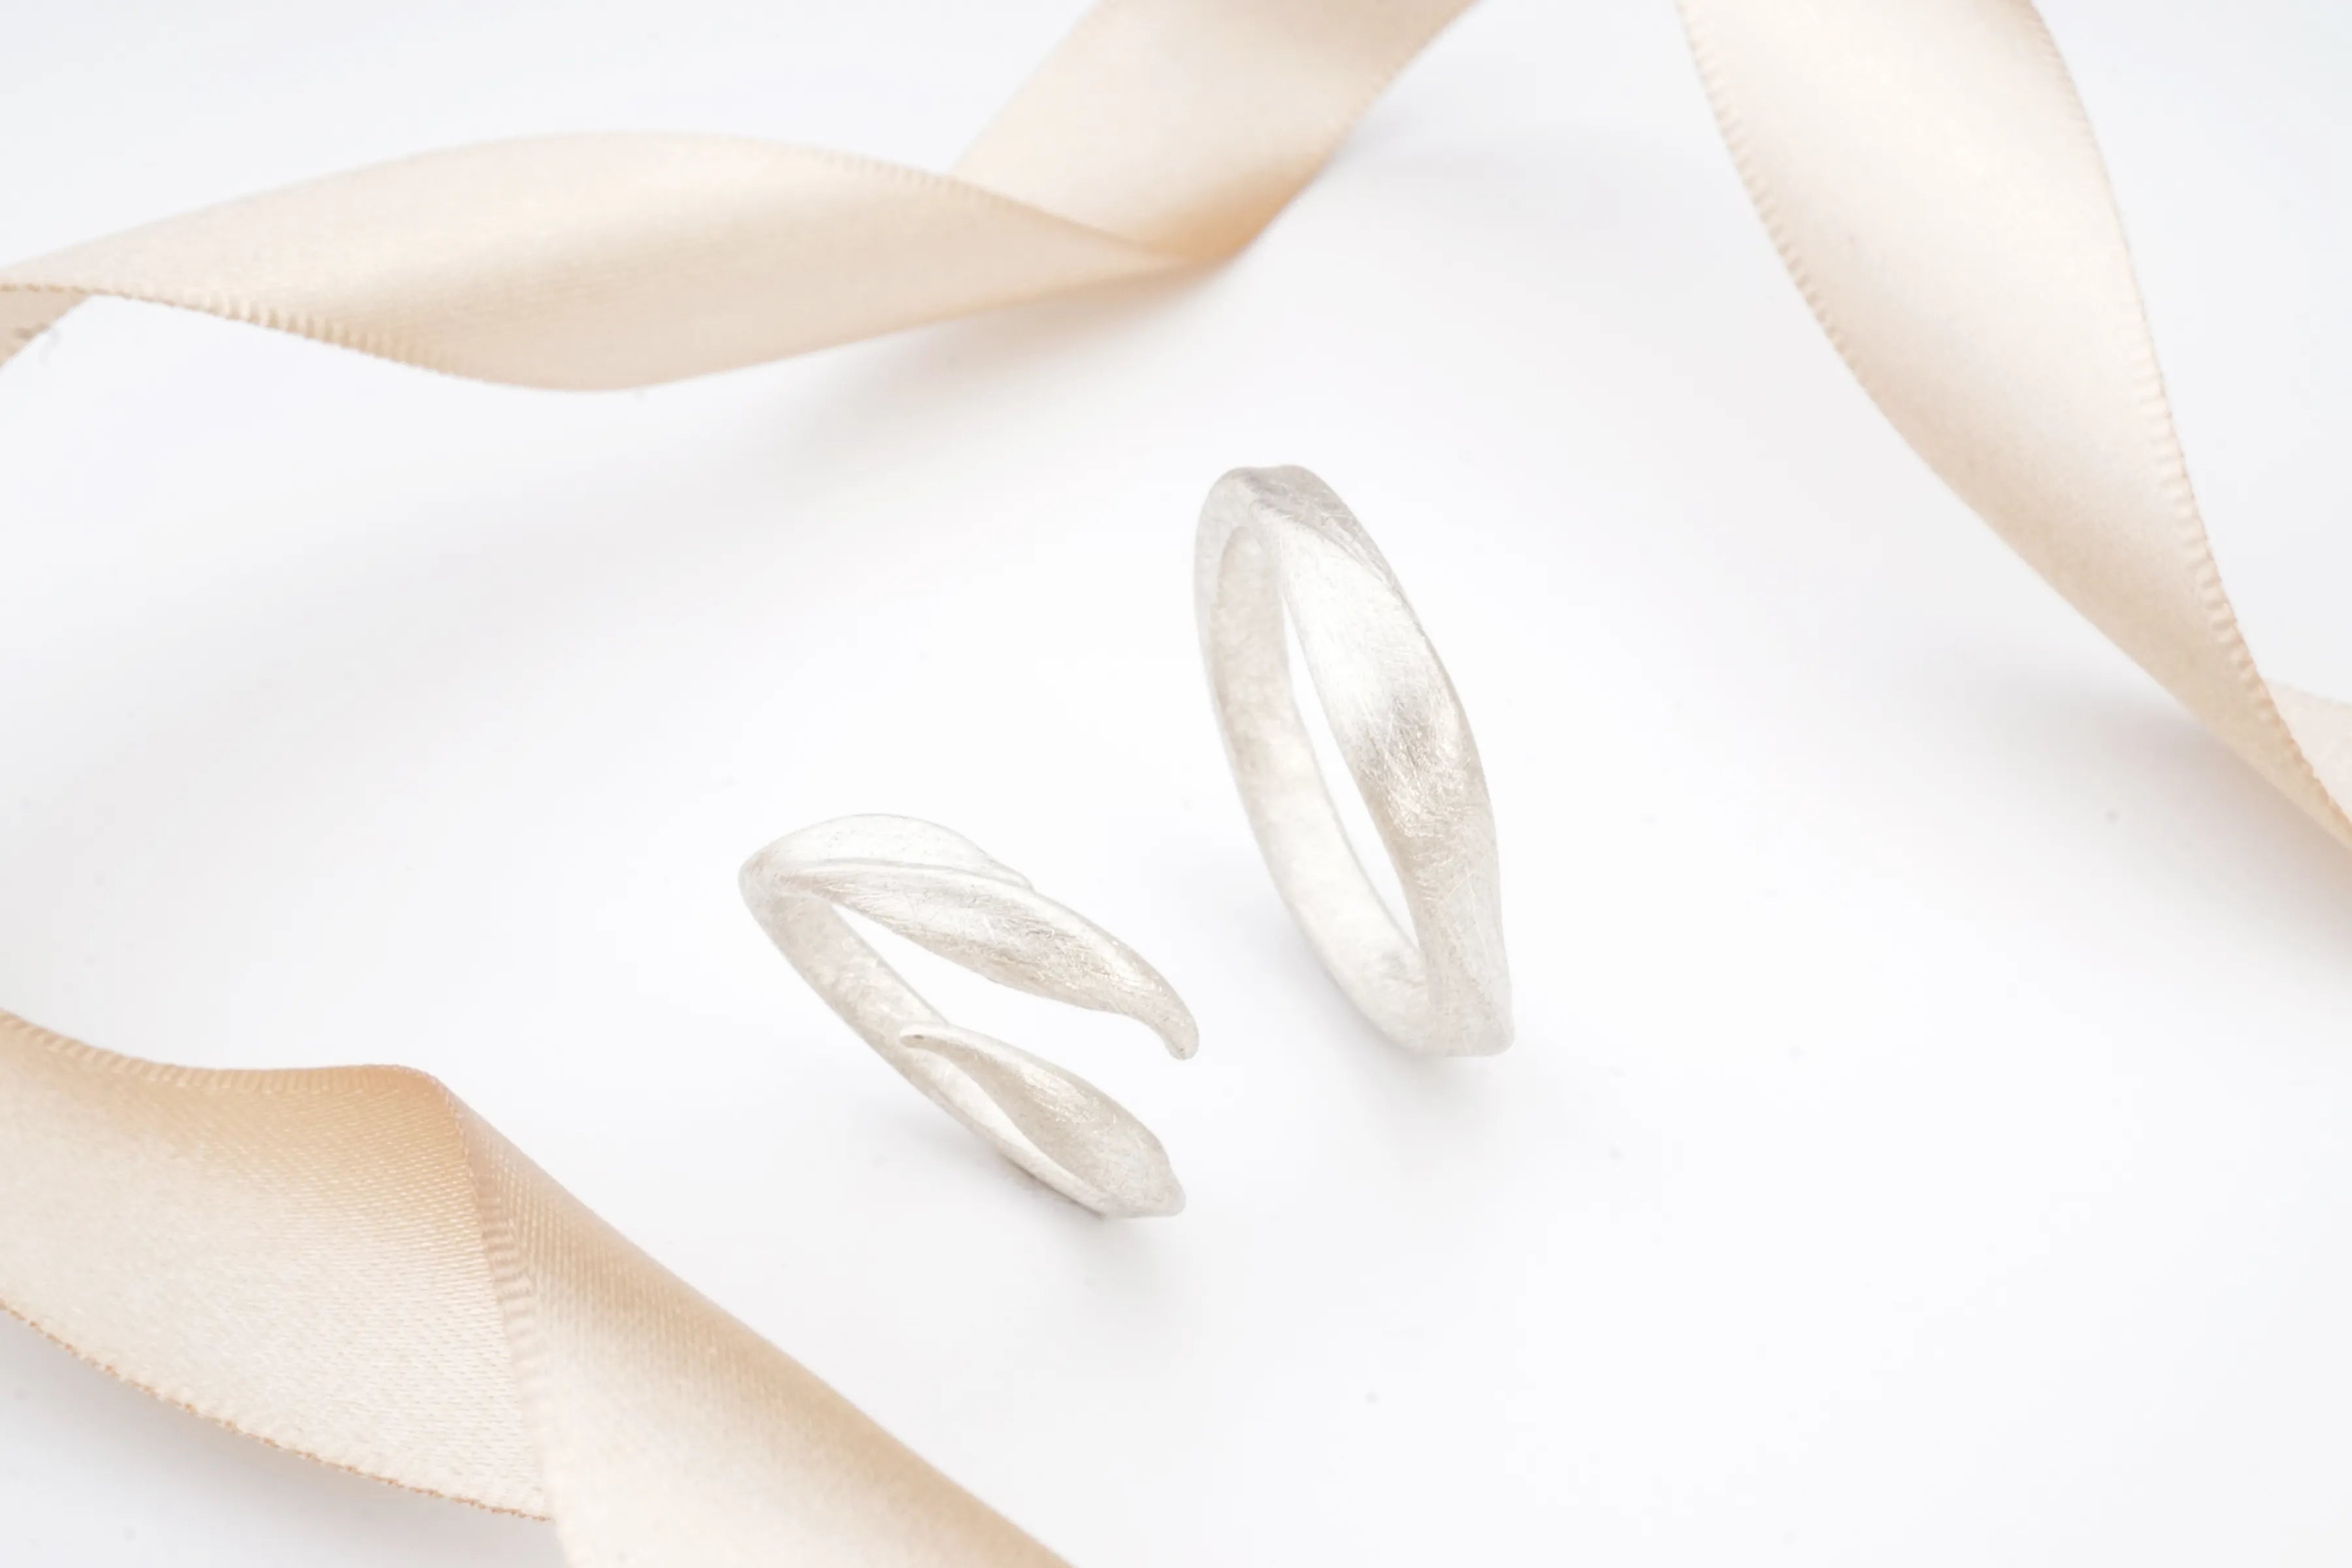 Chia Jewelry訂製婚戒對戒品牌推薦分享，手工製作植物主題簡約婚戒，獨特刷紋清新優雅設計